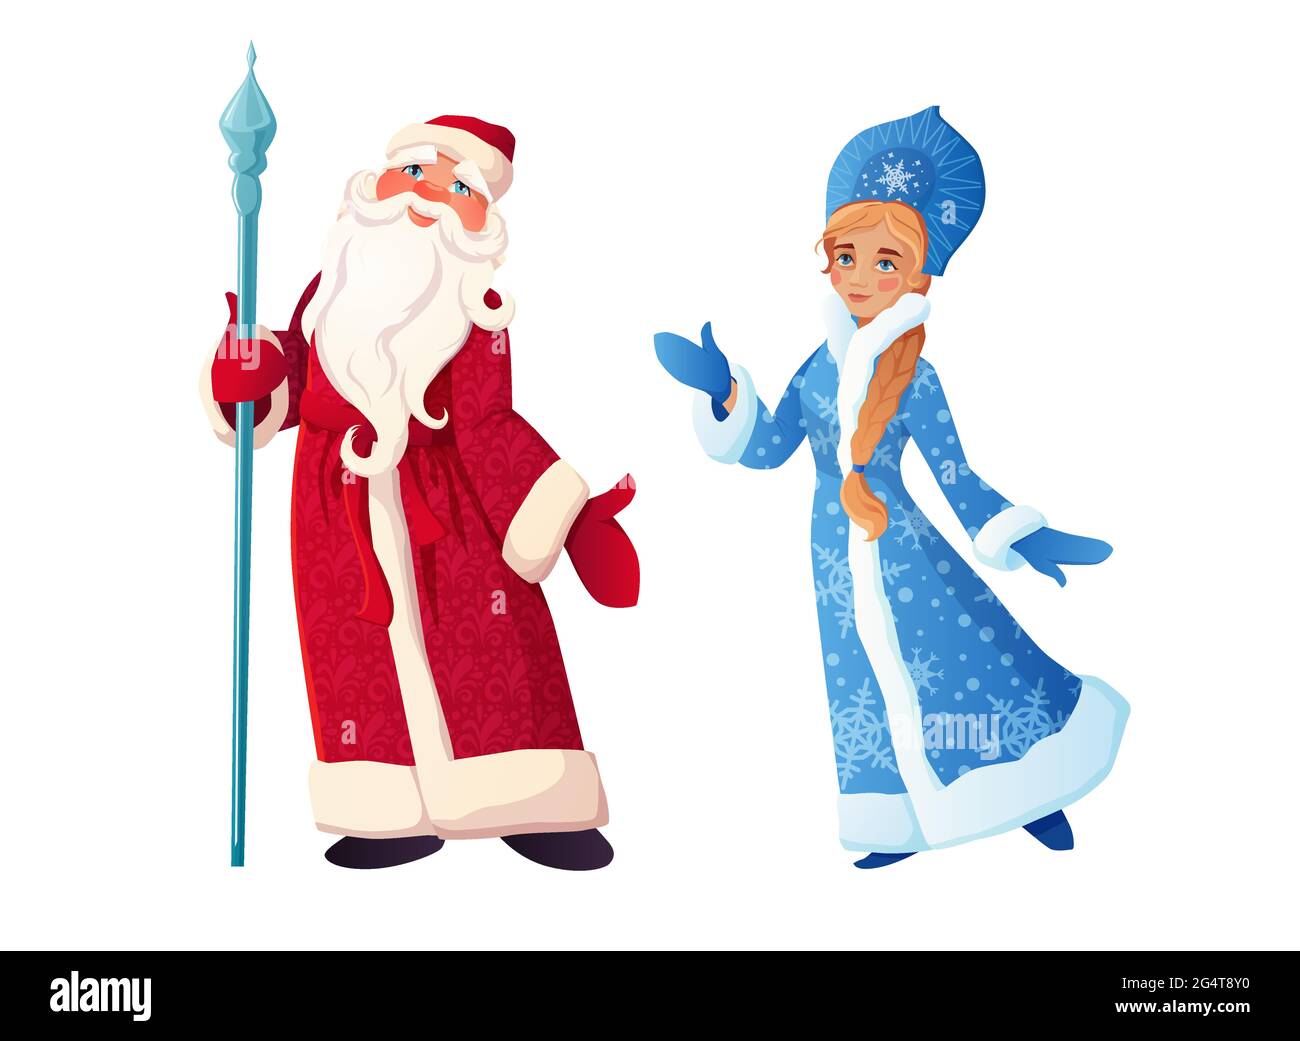 Russischer Weihnachtsmann mit Schneewittchen. DED Moroz und Snegurochka. Russischer Text Frohes neues Jahr. Cartoon-Vektorgrafik. Stock Vektor